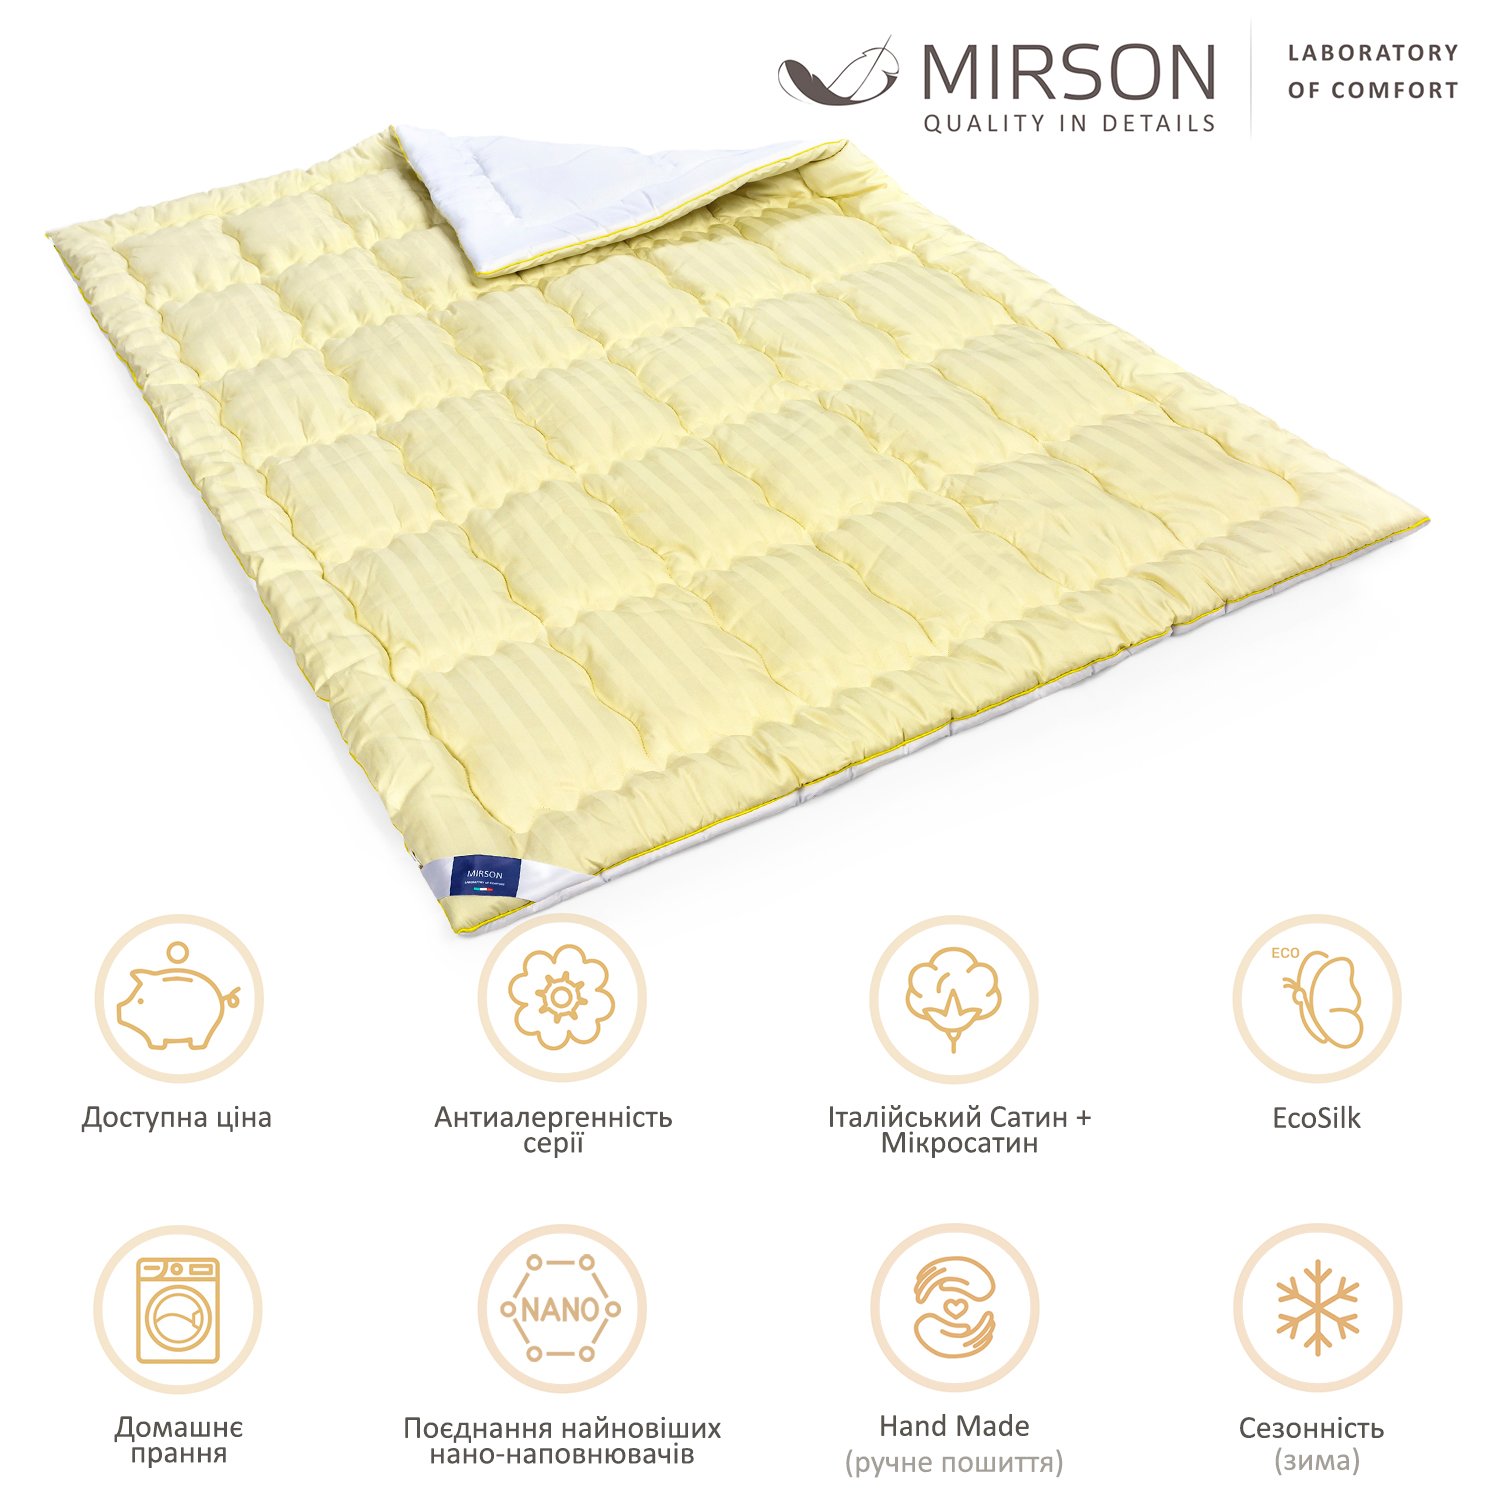 Одеяло антиаллергенное MirSon Carmela Hand Made EcoSilk №0555, зимнее, 110x140 см, желто-белое - фото 6